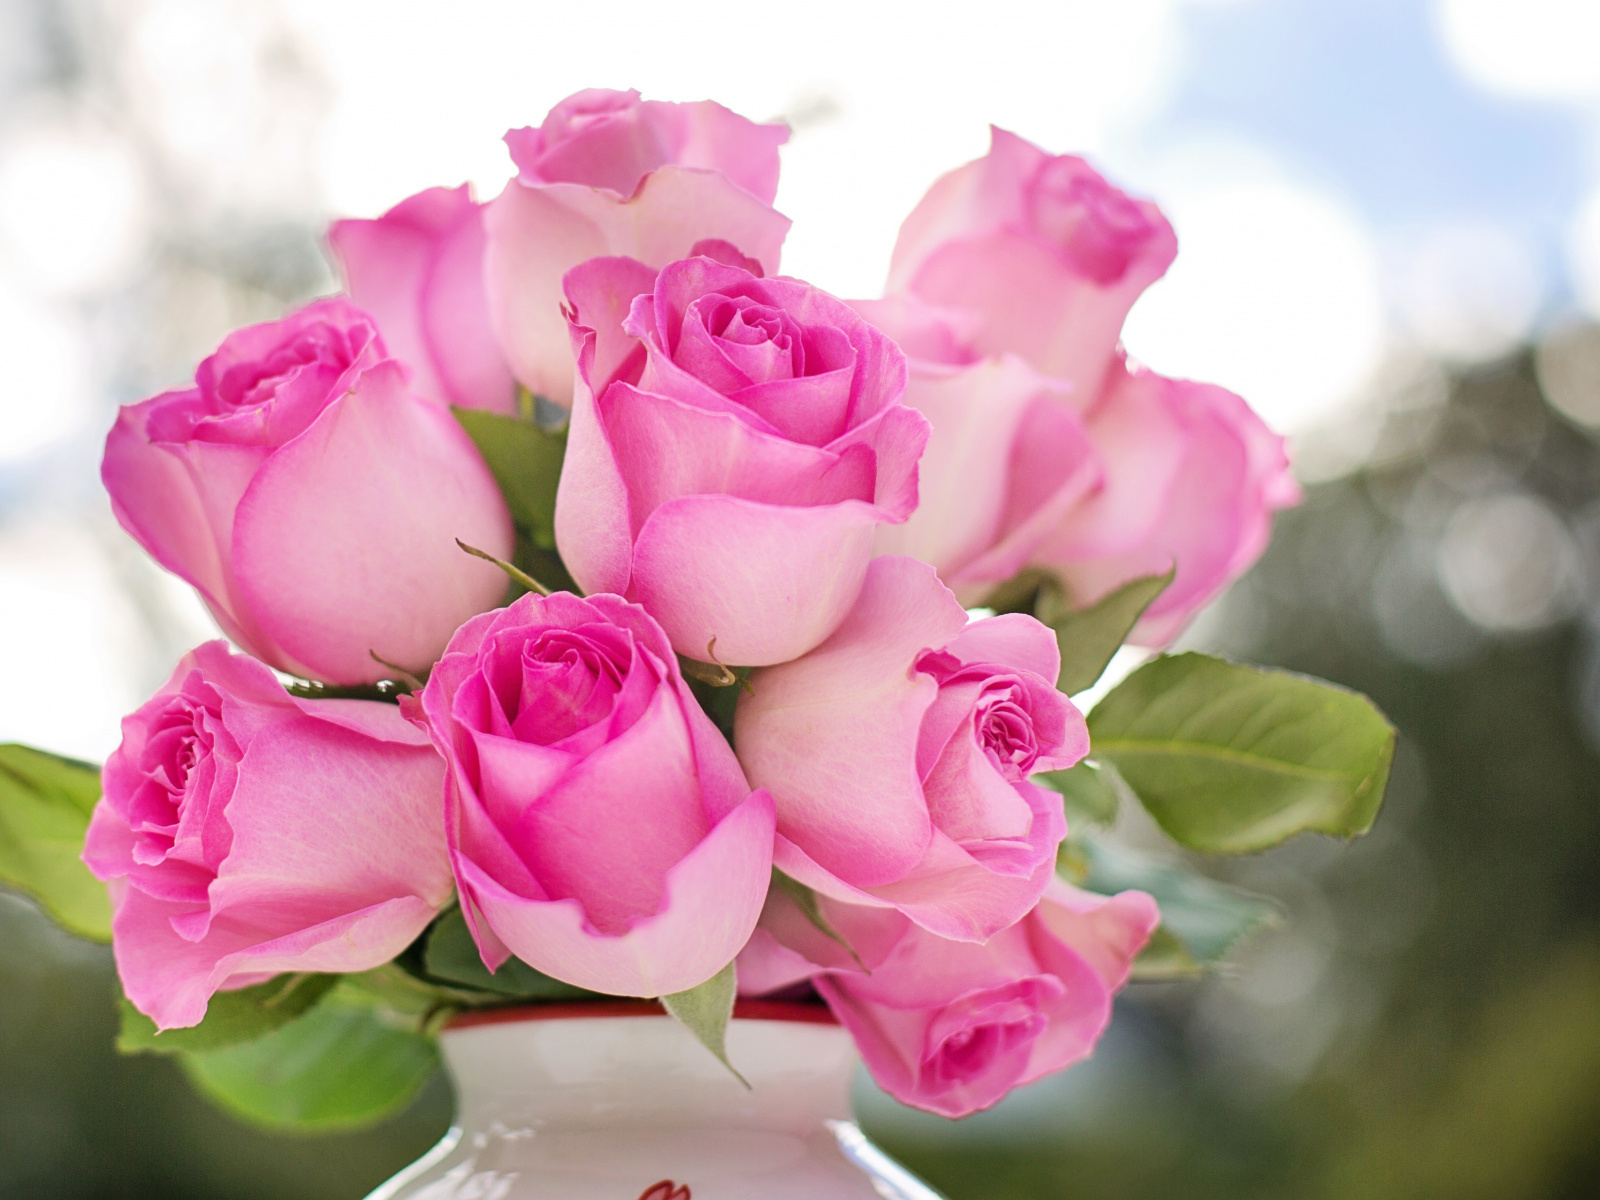 Flower Vase, Pink Roses, Fresh, Wallpaper - Inspiration Good Morning Msg , HD Wallpaper & Backgrounds